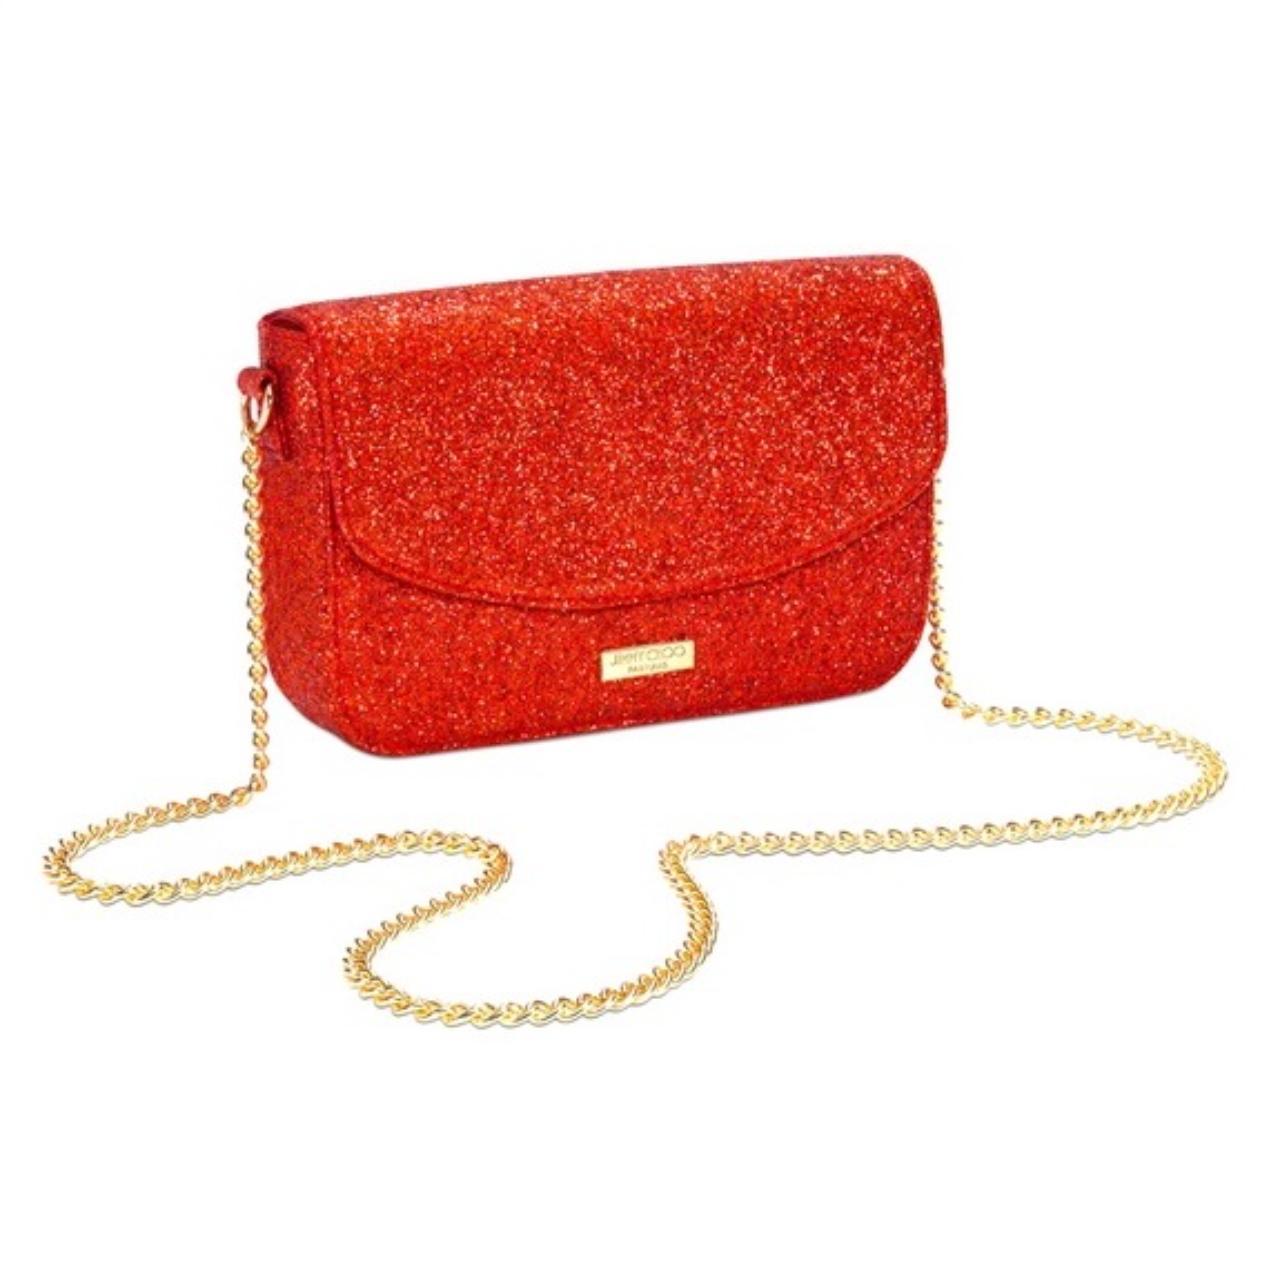 Jimmy choo I want choo bundle red glitter zipper pouch New | Pouch, Zipper  pouch, Red glitter